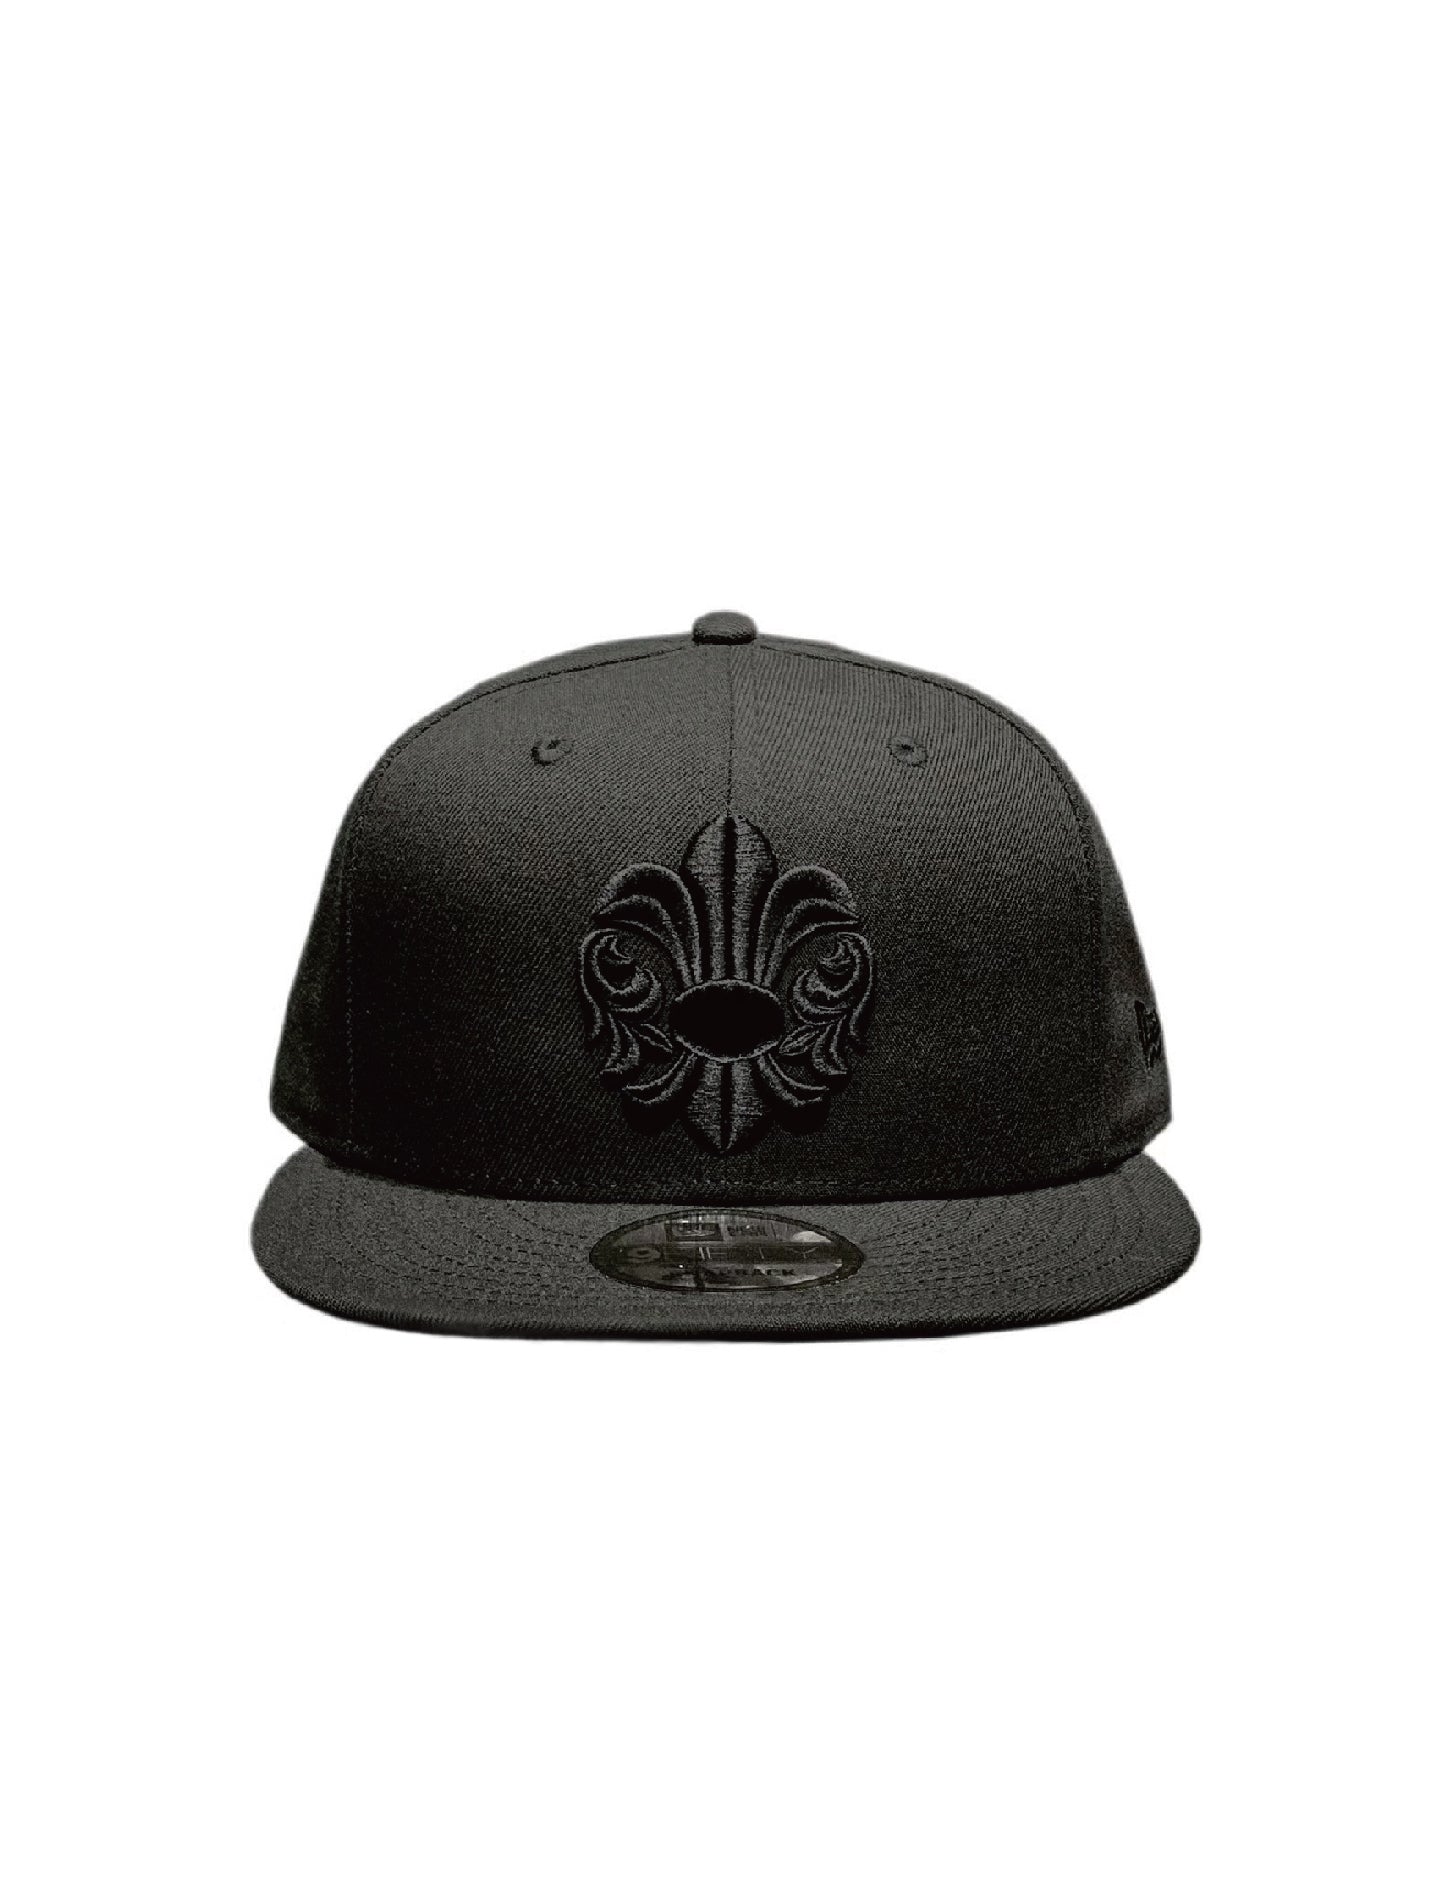 A&G NewEra 9FIFTY コラボ キャップ - 帽子